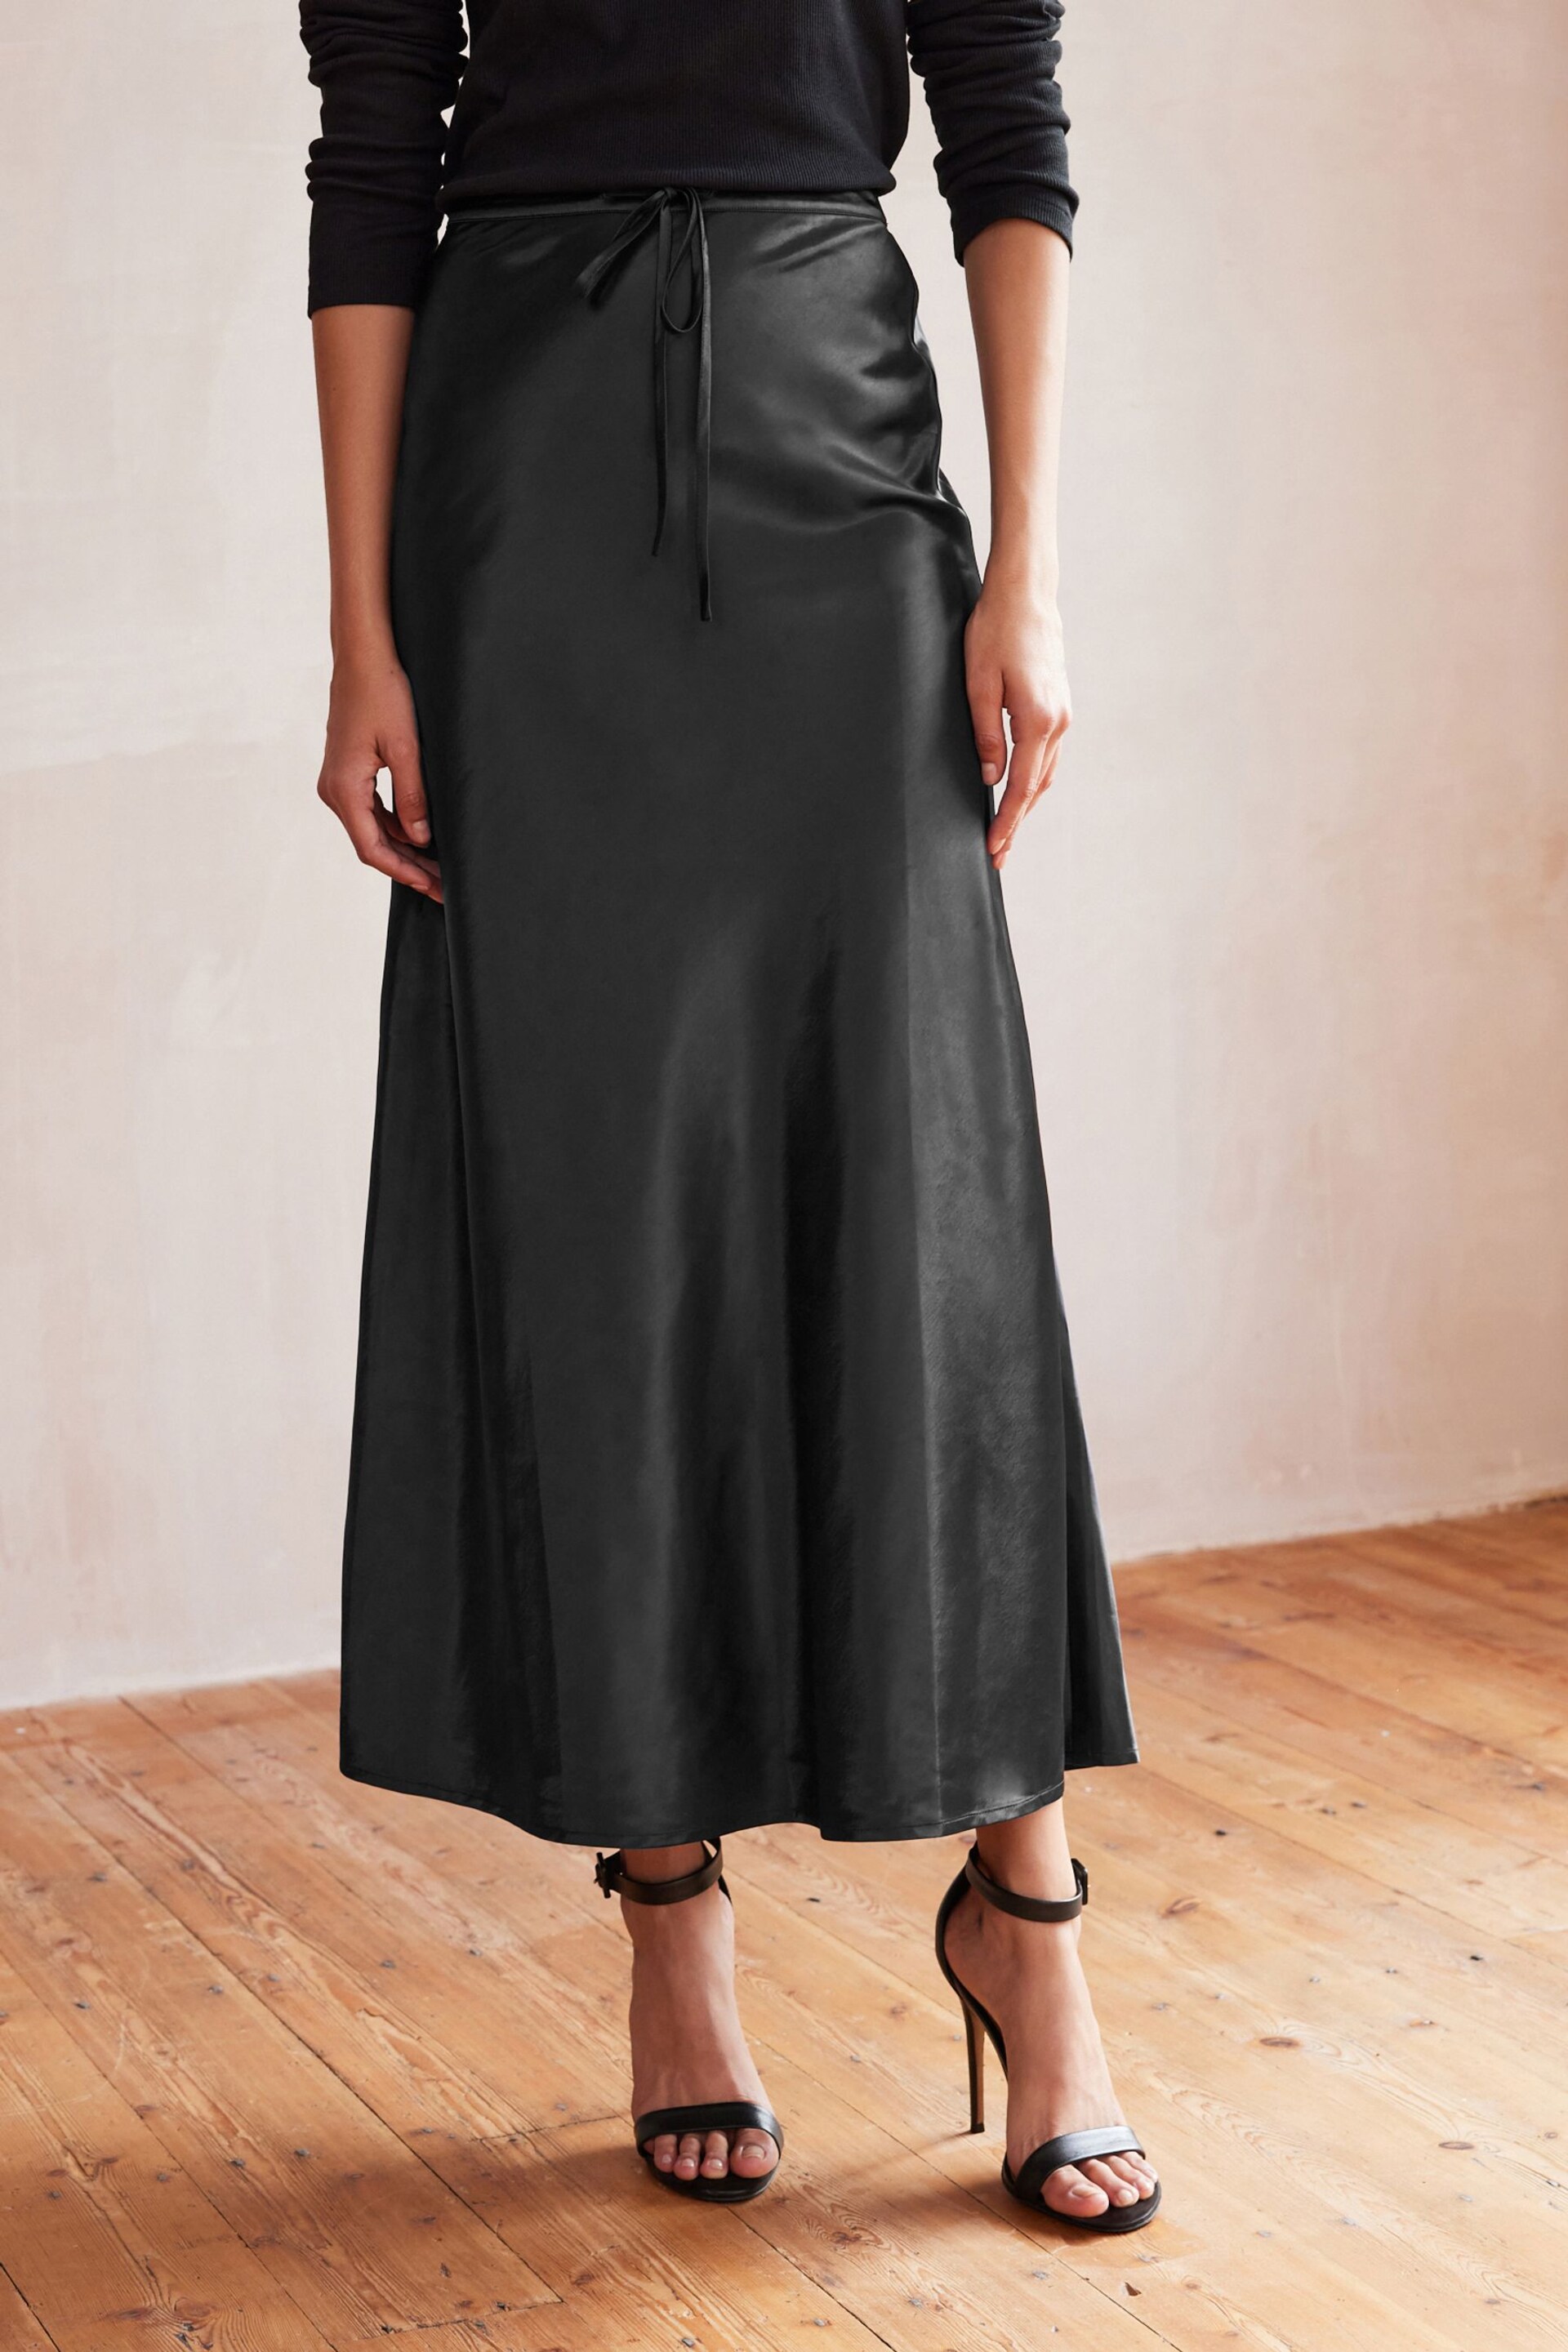 Black Long Length Satin Skirt - Image 3 of 7